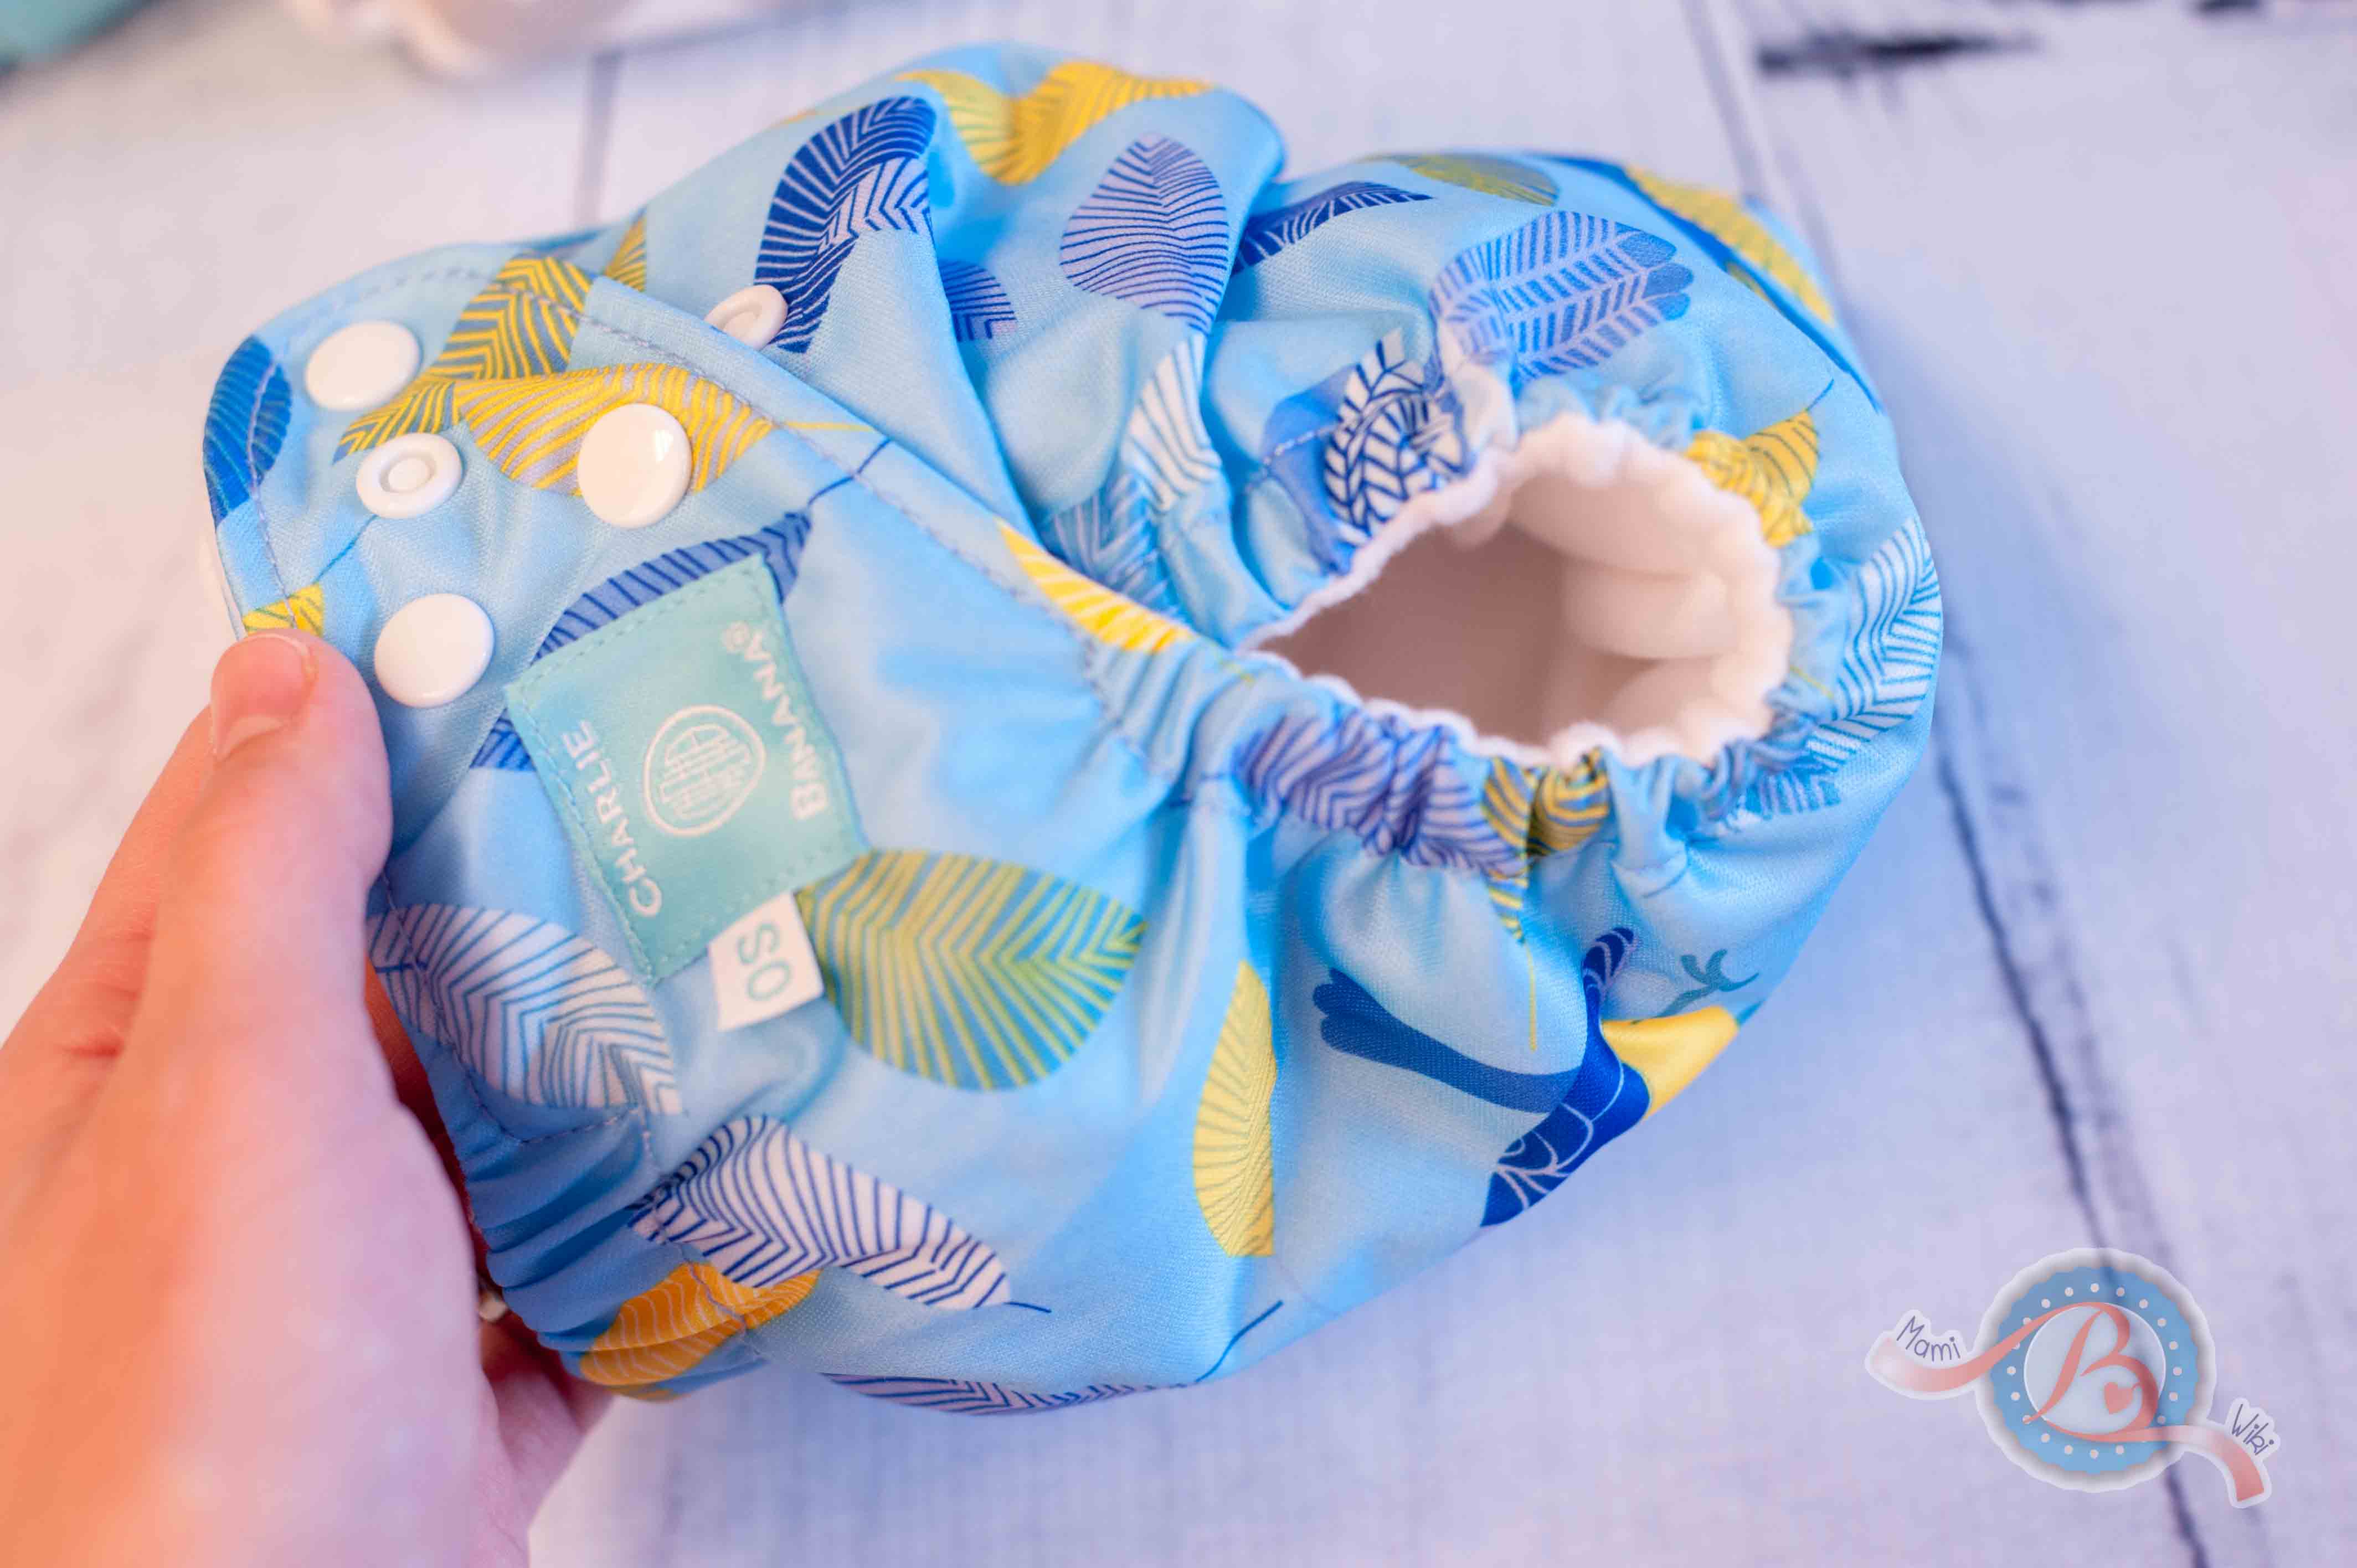 MamiWiki Stoffwindeltest Charlie Banana Hybrid Höschenwindel Nappy Cloth Diaper Stoffwindel Wickeln Neugeborene Baby Windel Bewertung